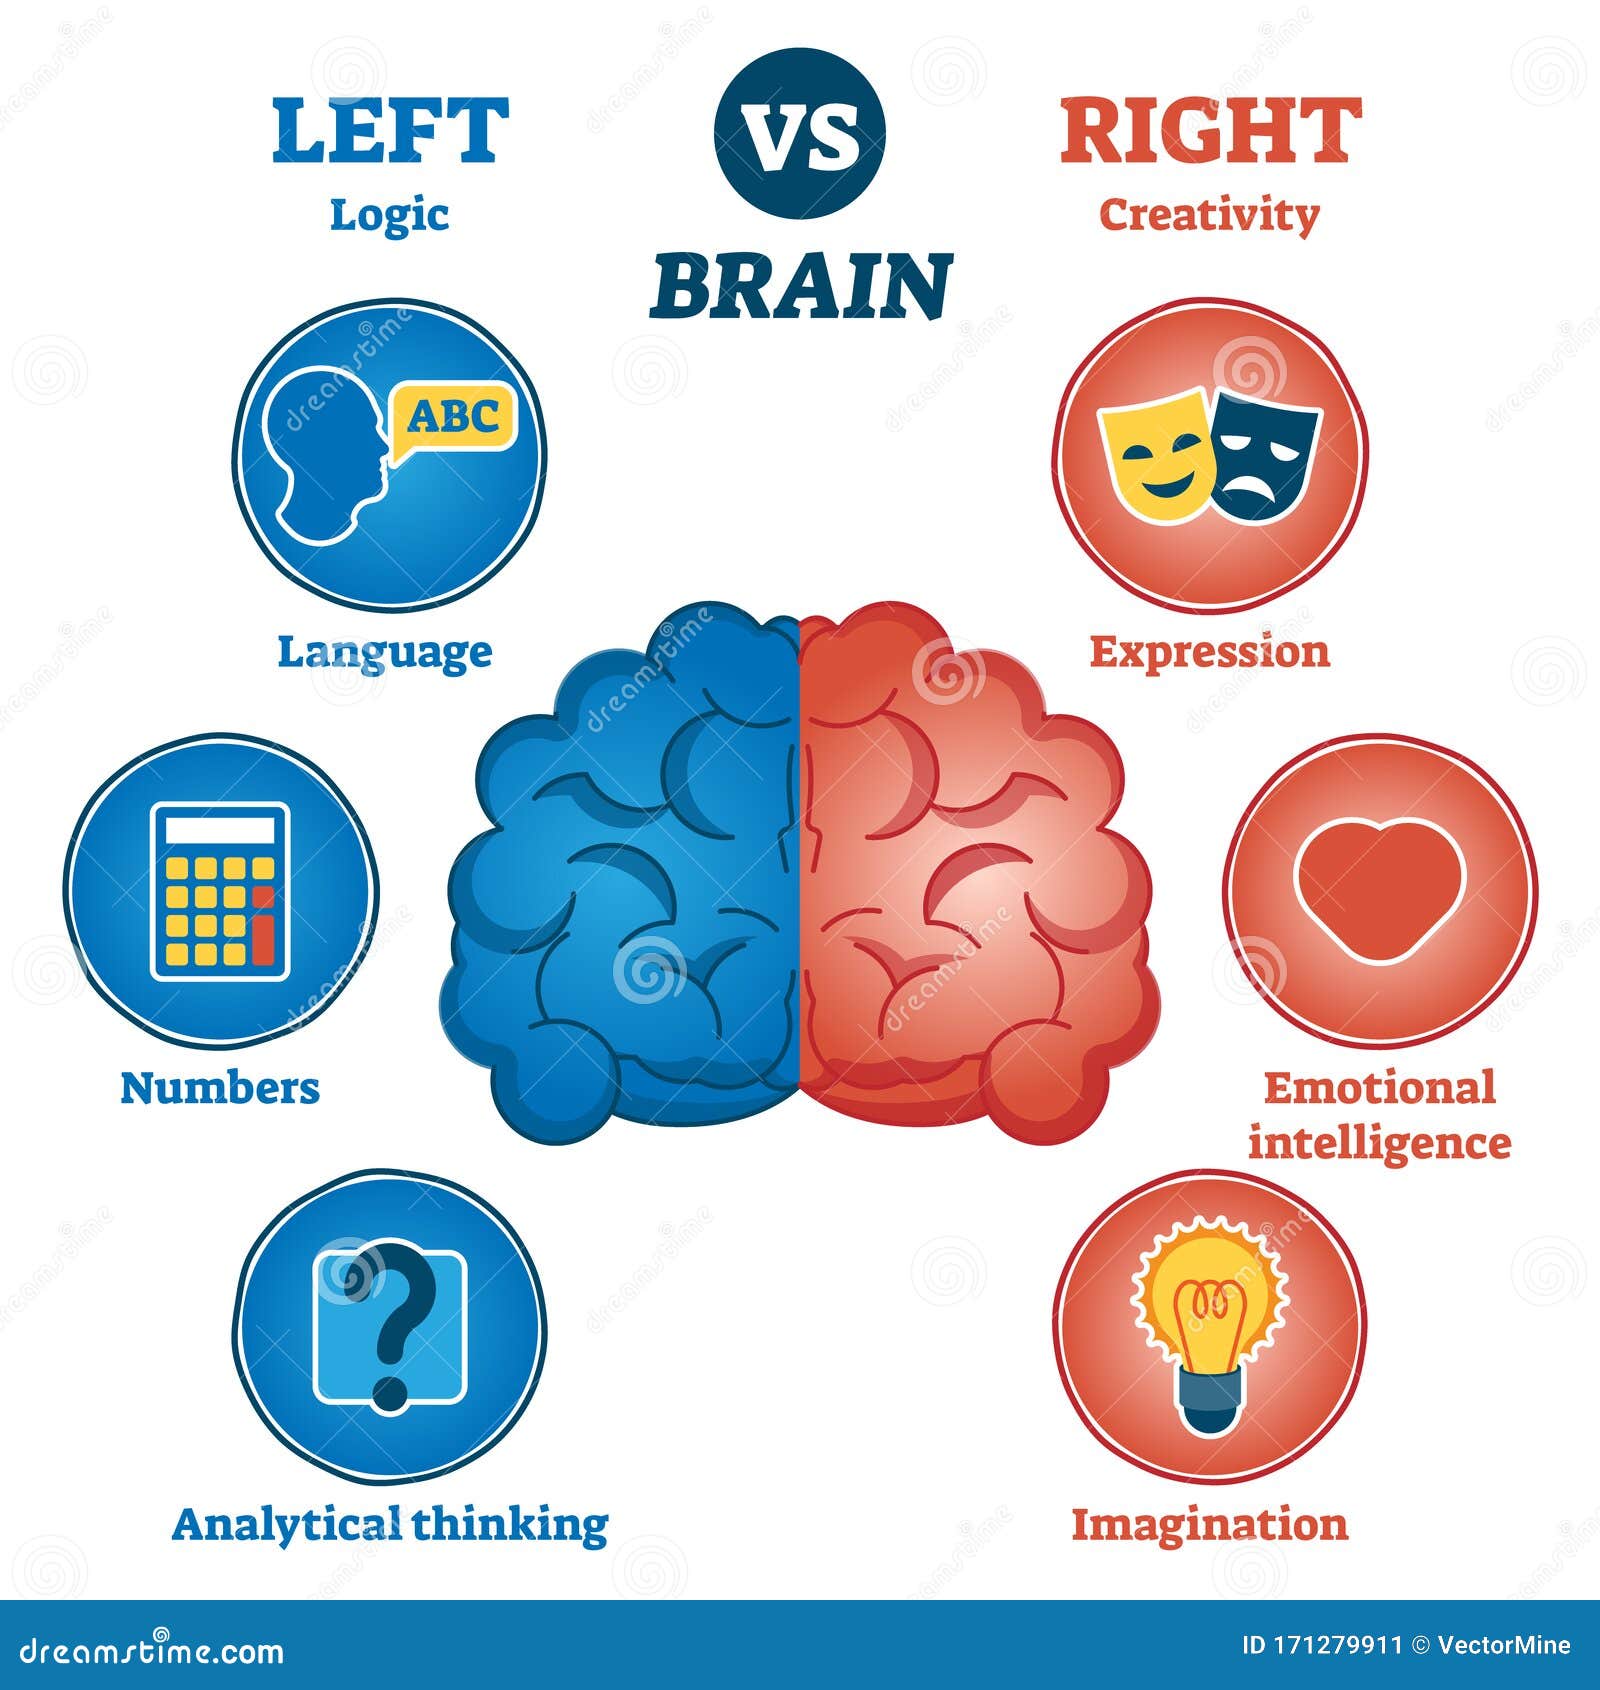 left versus right brain traits diagram